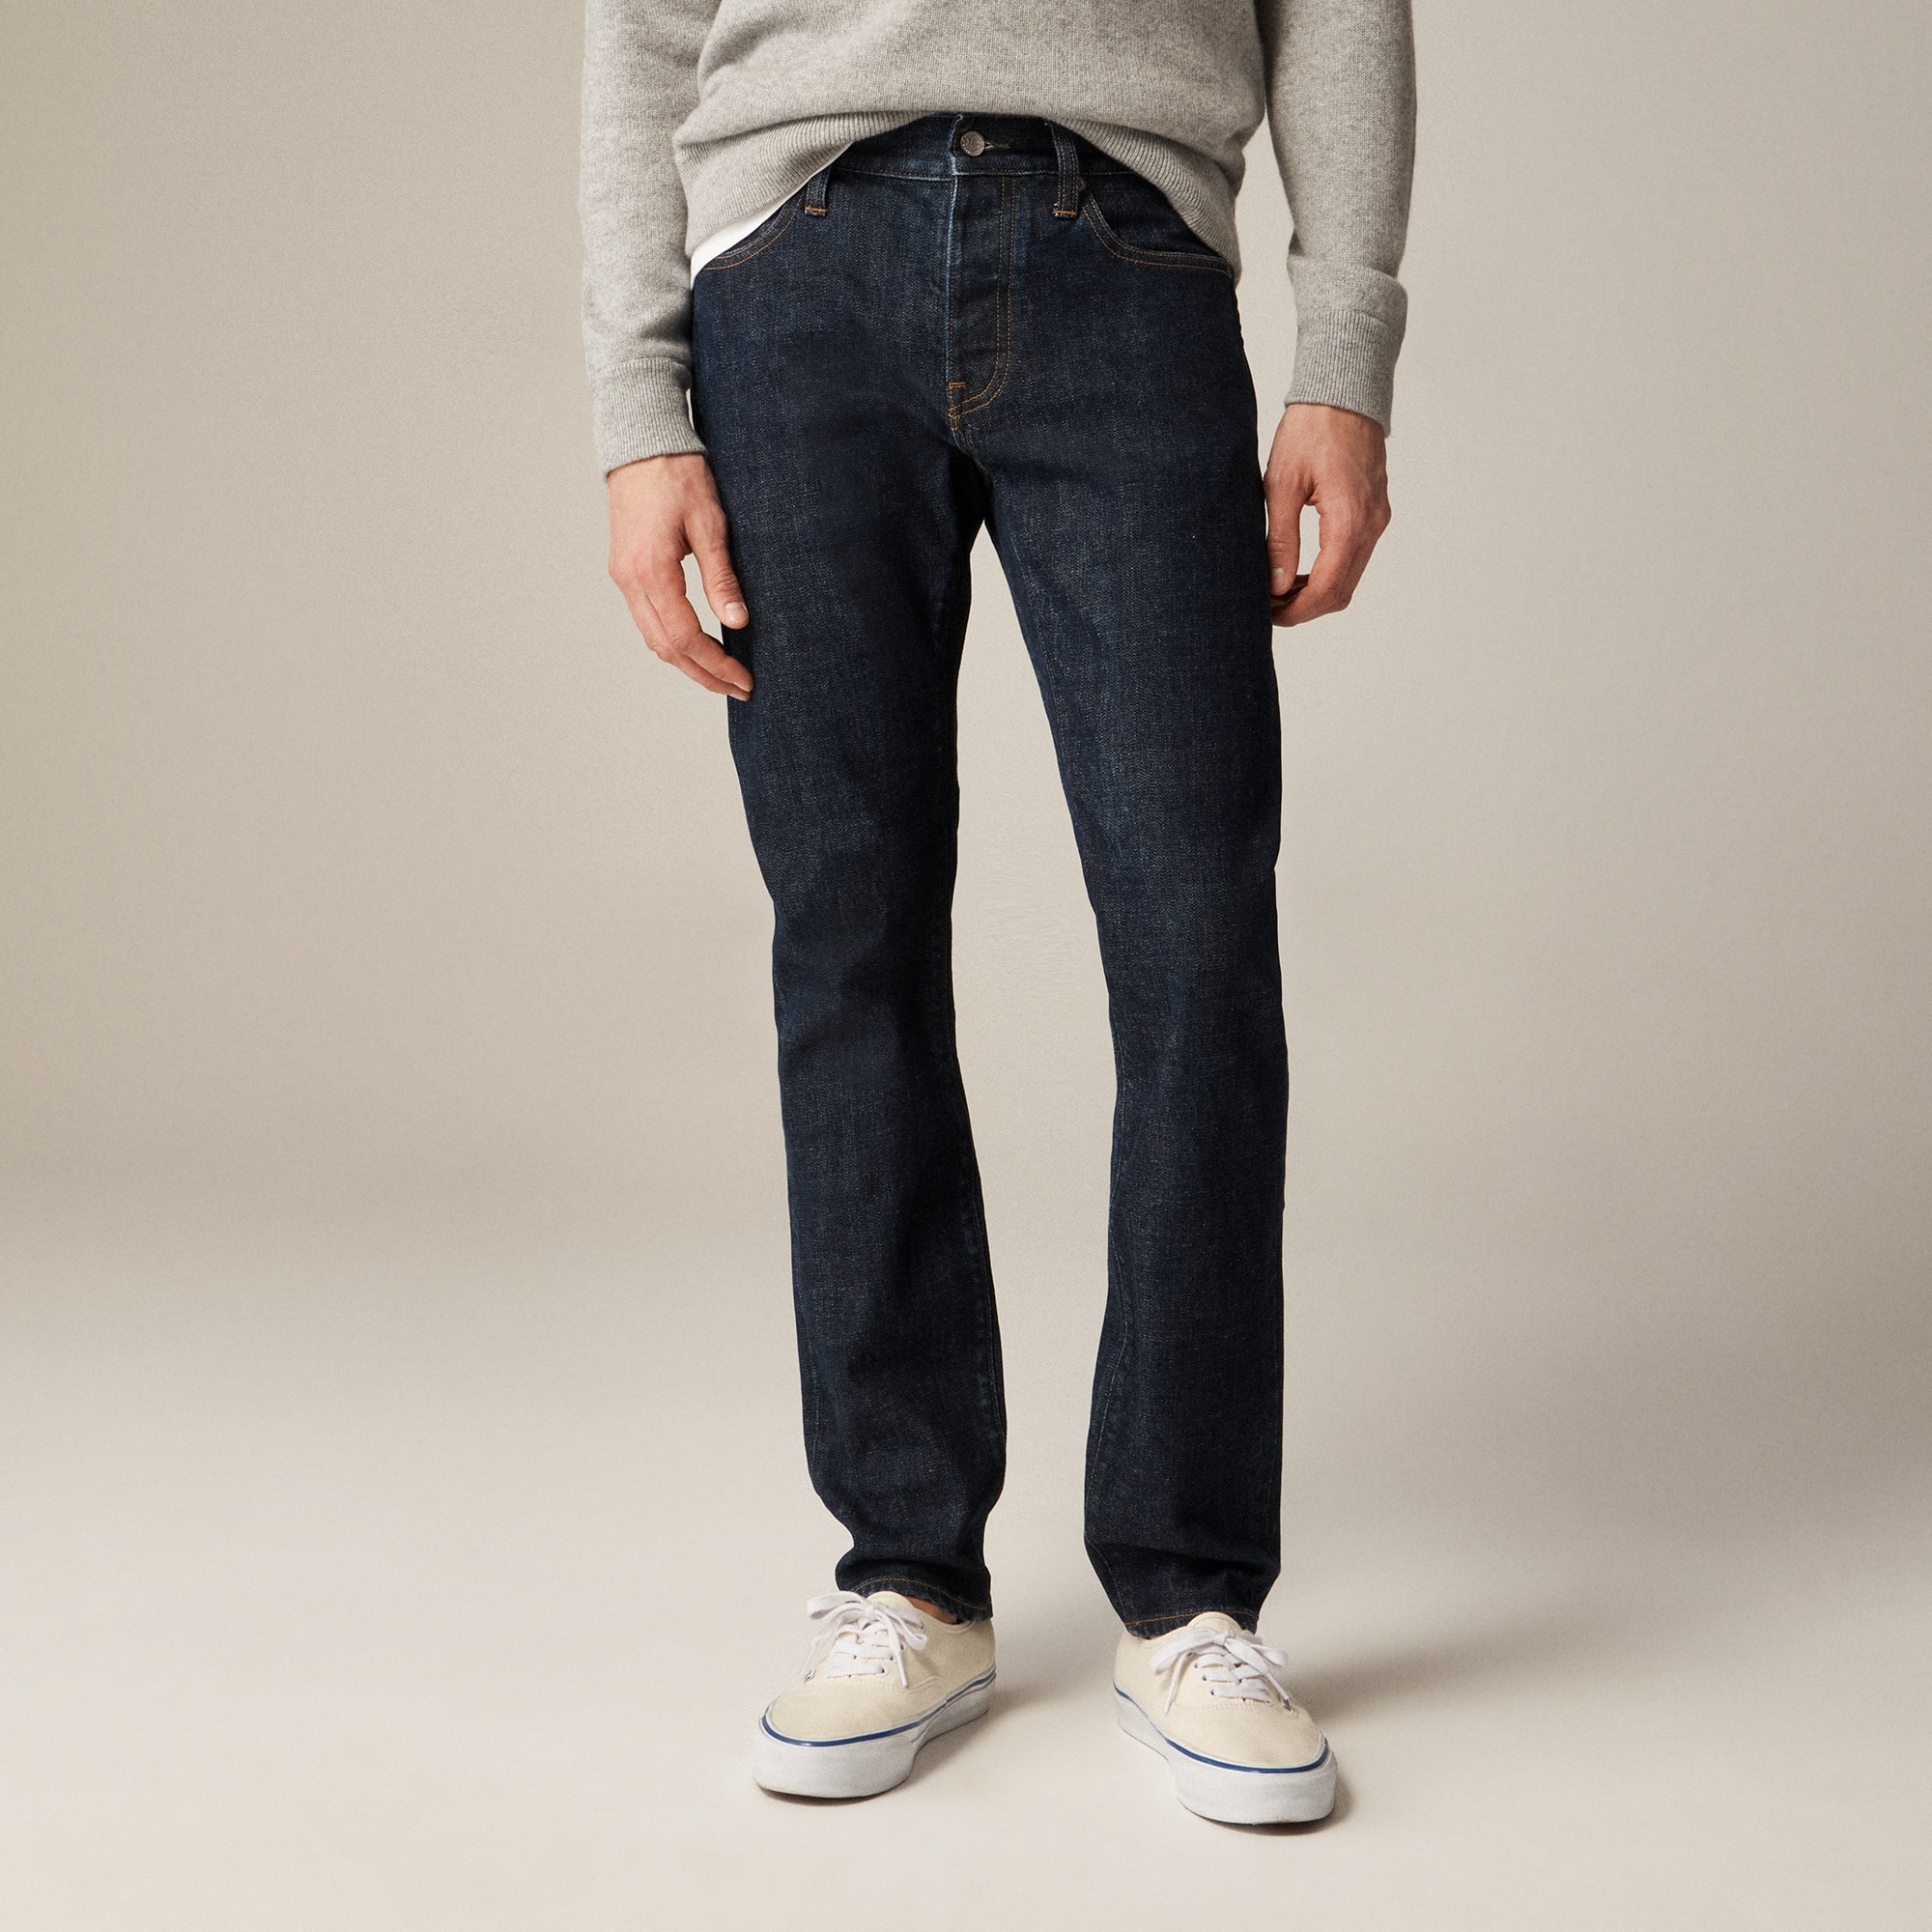  484 Slim-fit jean in Japanese stretch selvedge denim